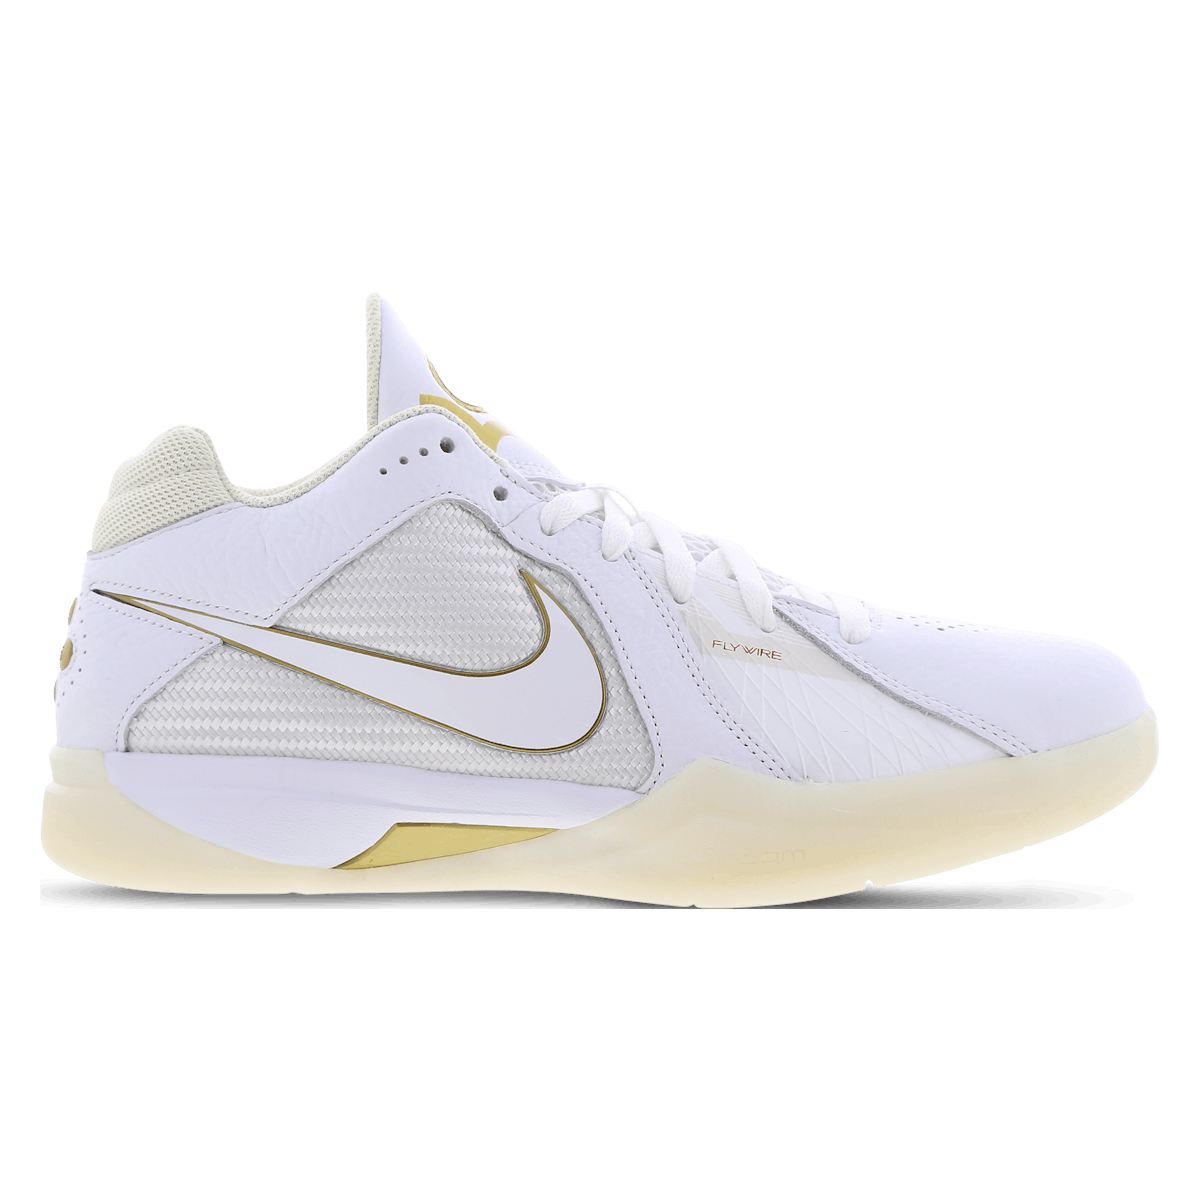 Nike KD 3 Retro White Metallic Gold